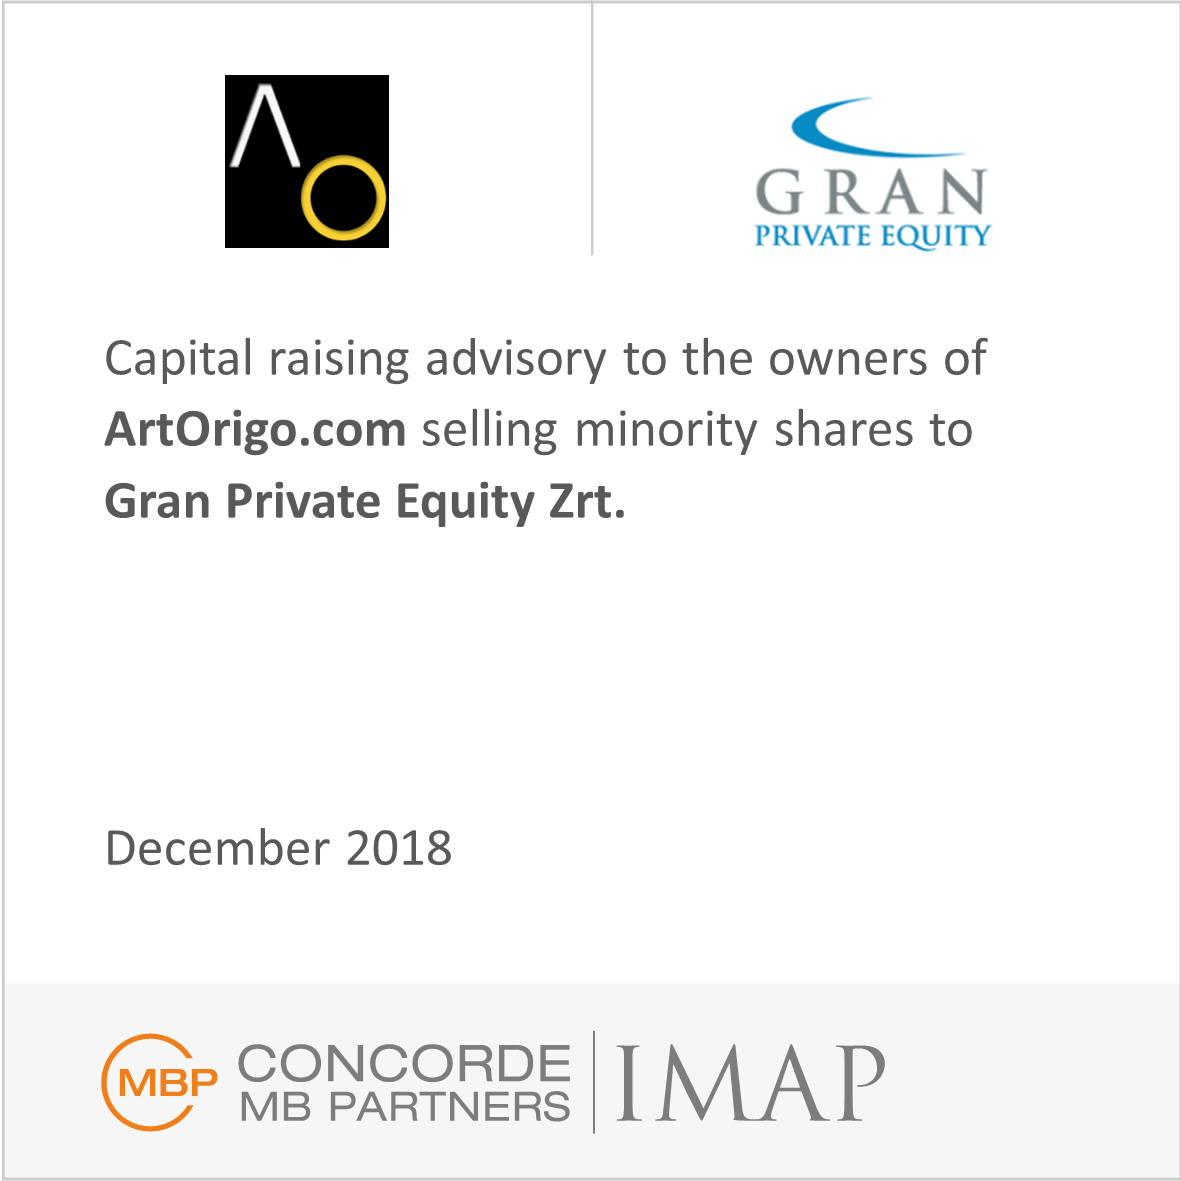 Capital raising advisory services to the owners of ArtOrigo.com